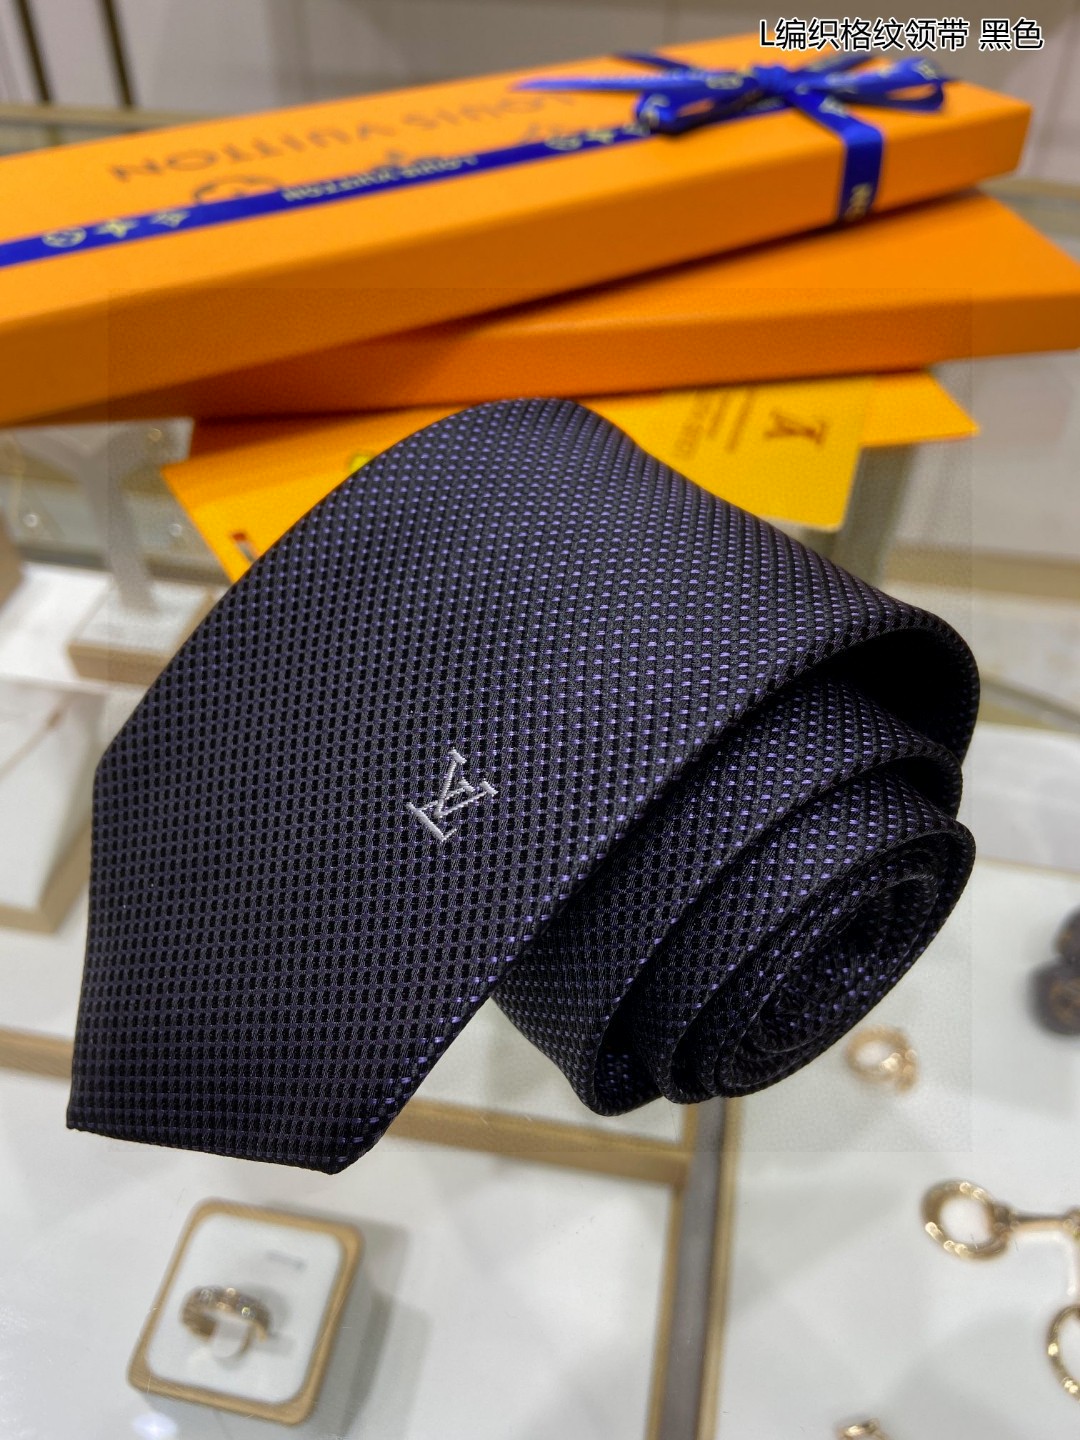 特价男士领带系列L编织格纹领带稀有展现精湛手工与时尚优雅的理想选择此款真丝织就的DiamondsV领带以